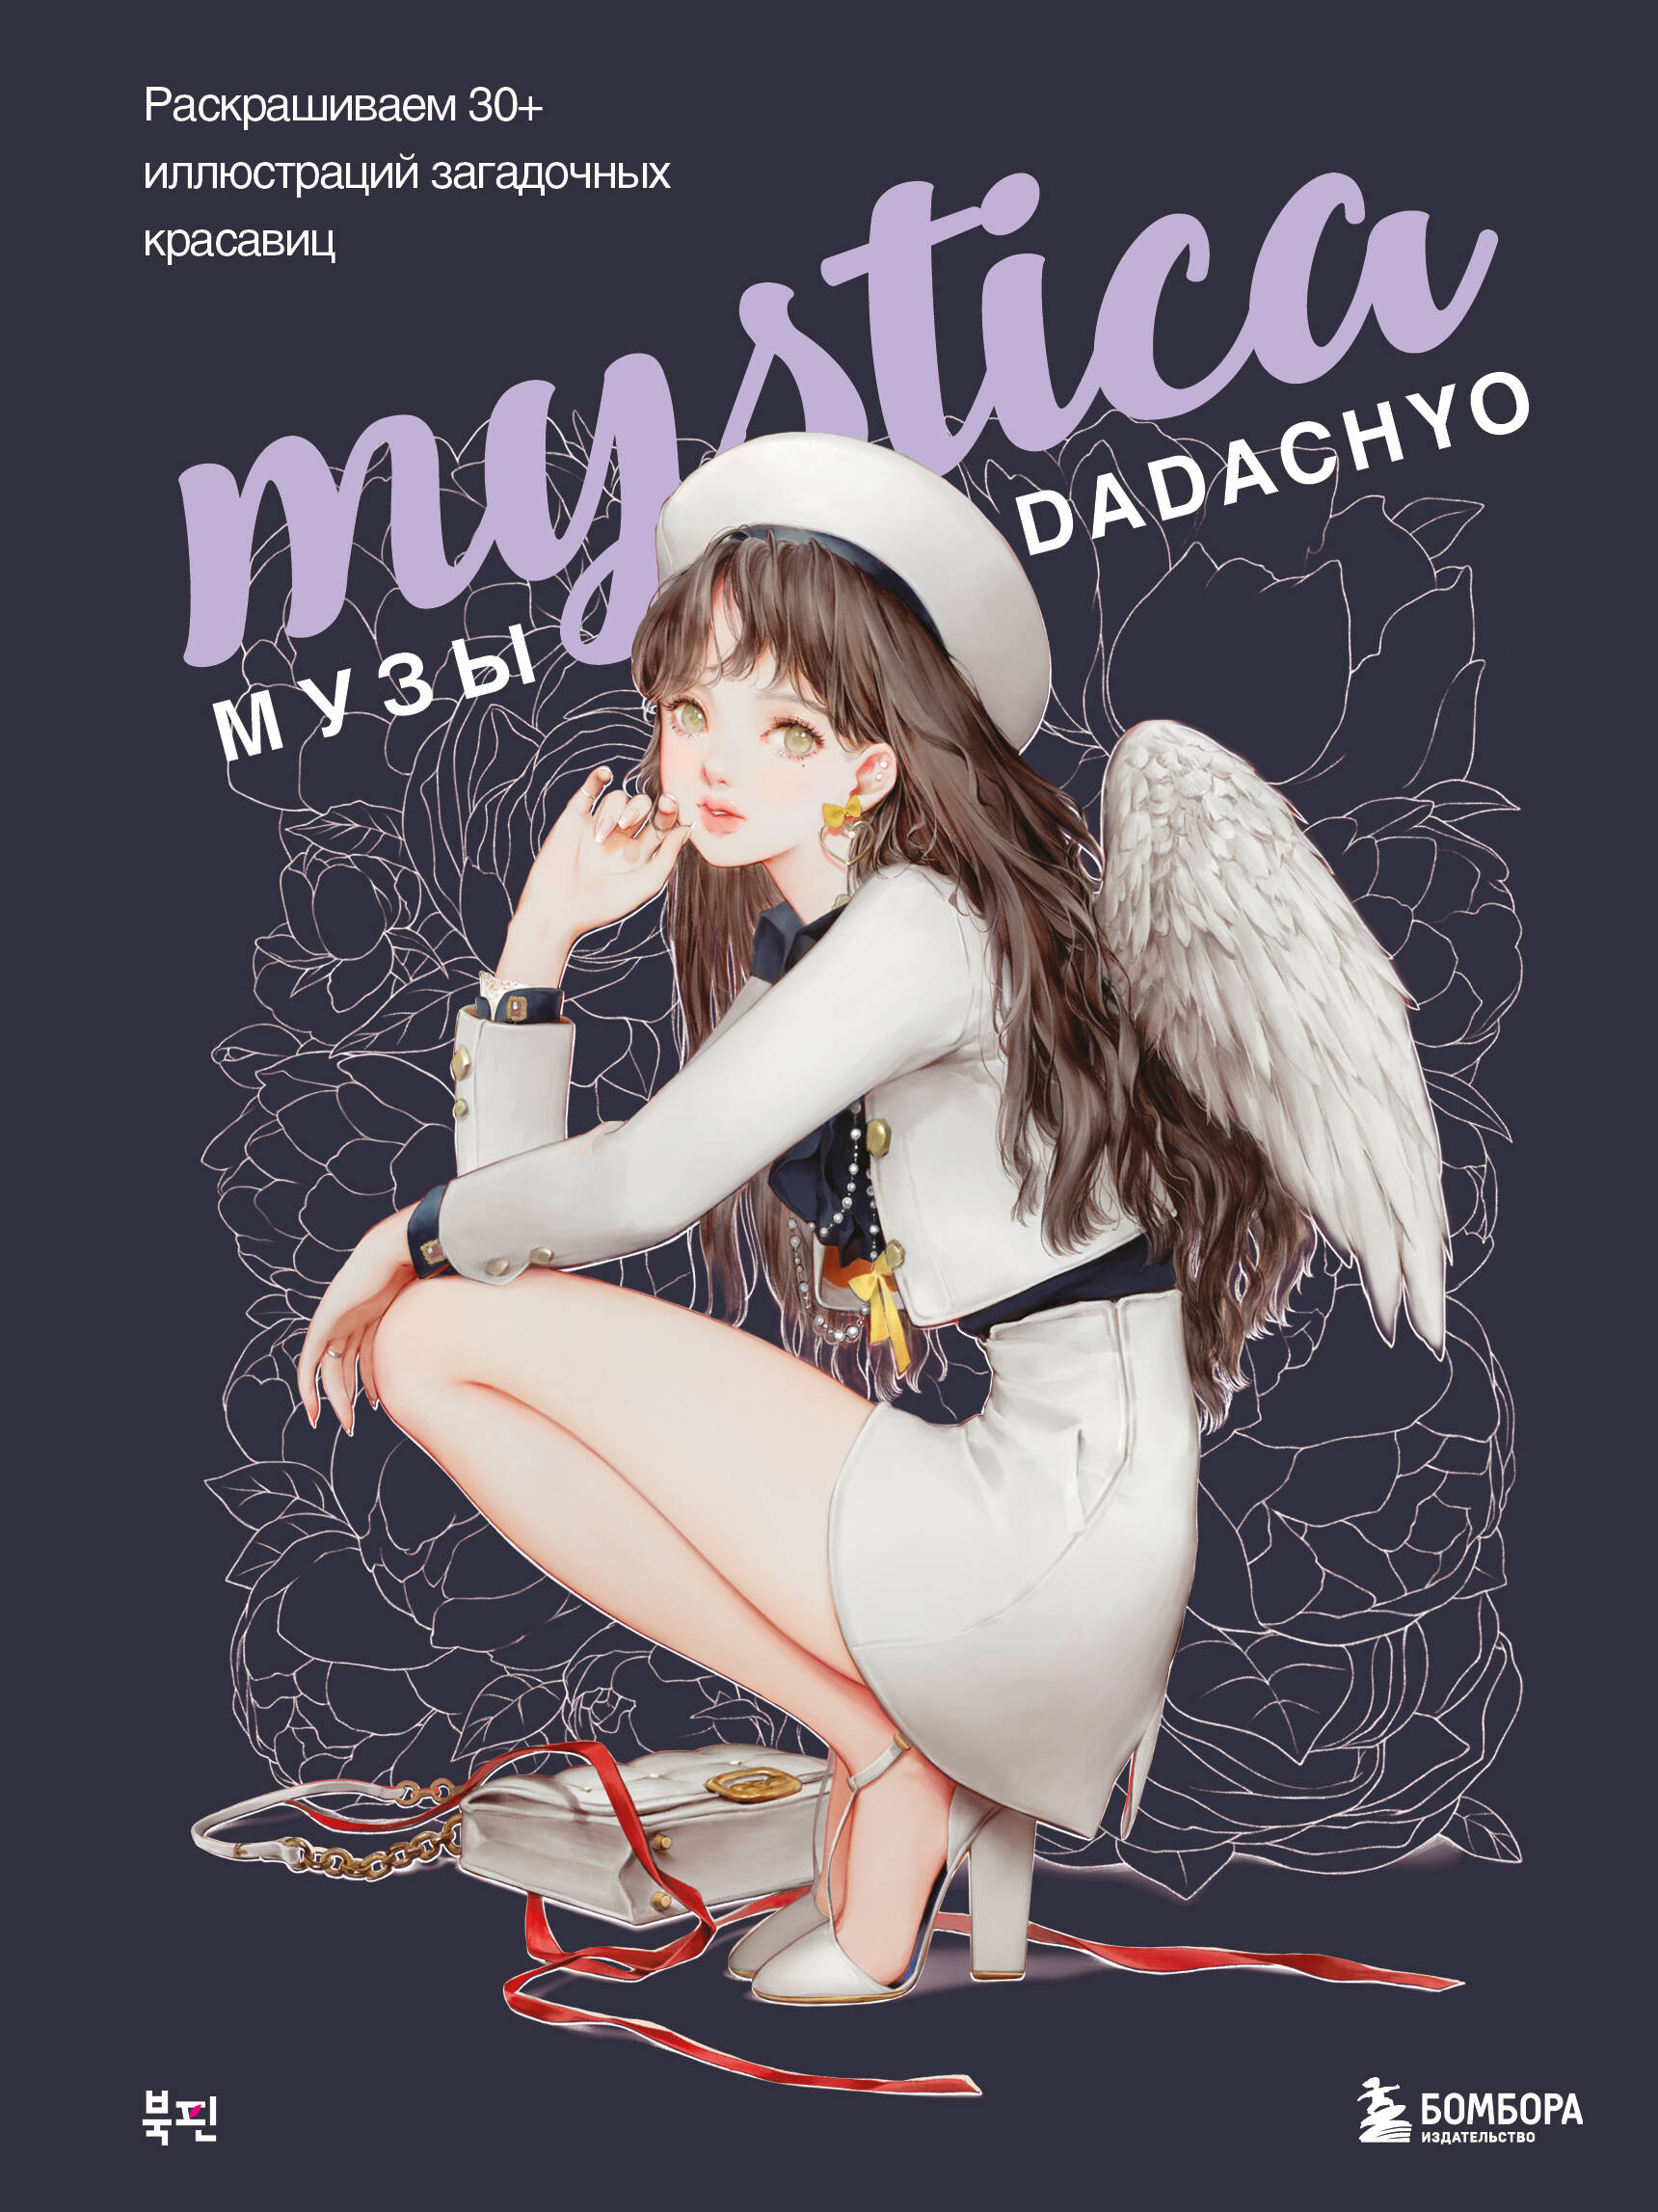 Mystica  DADACHYO  30+   